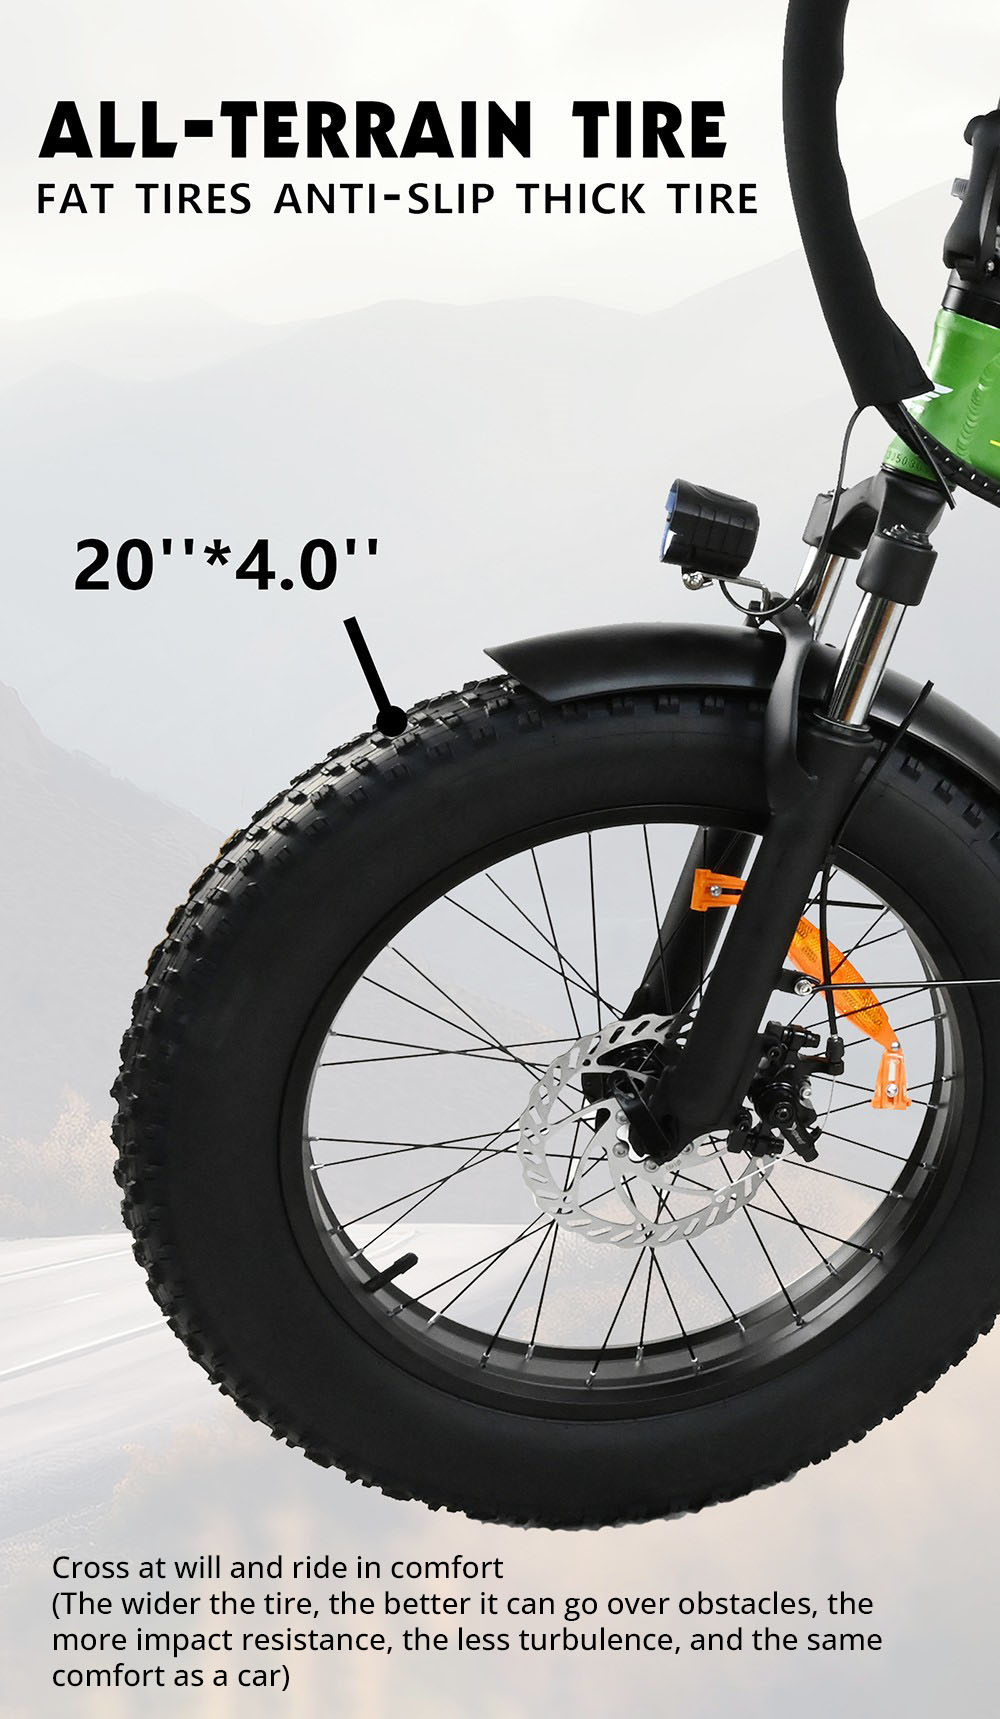 BAOLUJIE DZ2001 összecsukható elektromos kerékpár, 48V 12Ah akkumulátor 500W motor 20*4.0inches Gumiabroncsok 45km/h Max sebesség 30-40km tartomány Tárcsafék - zöld